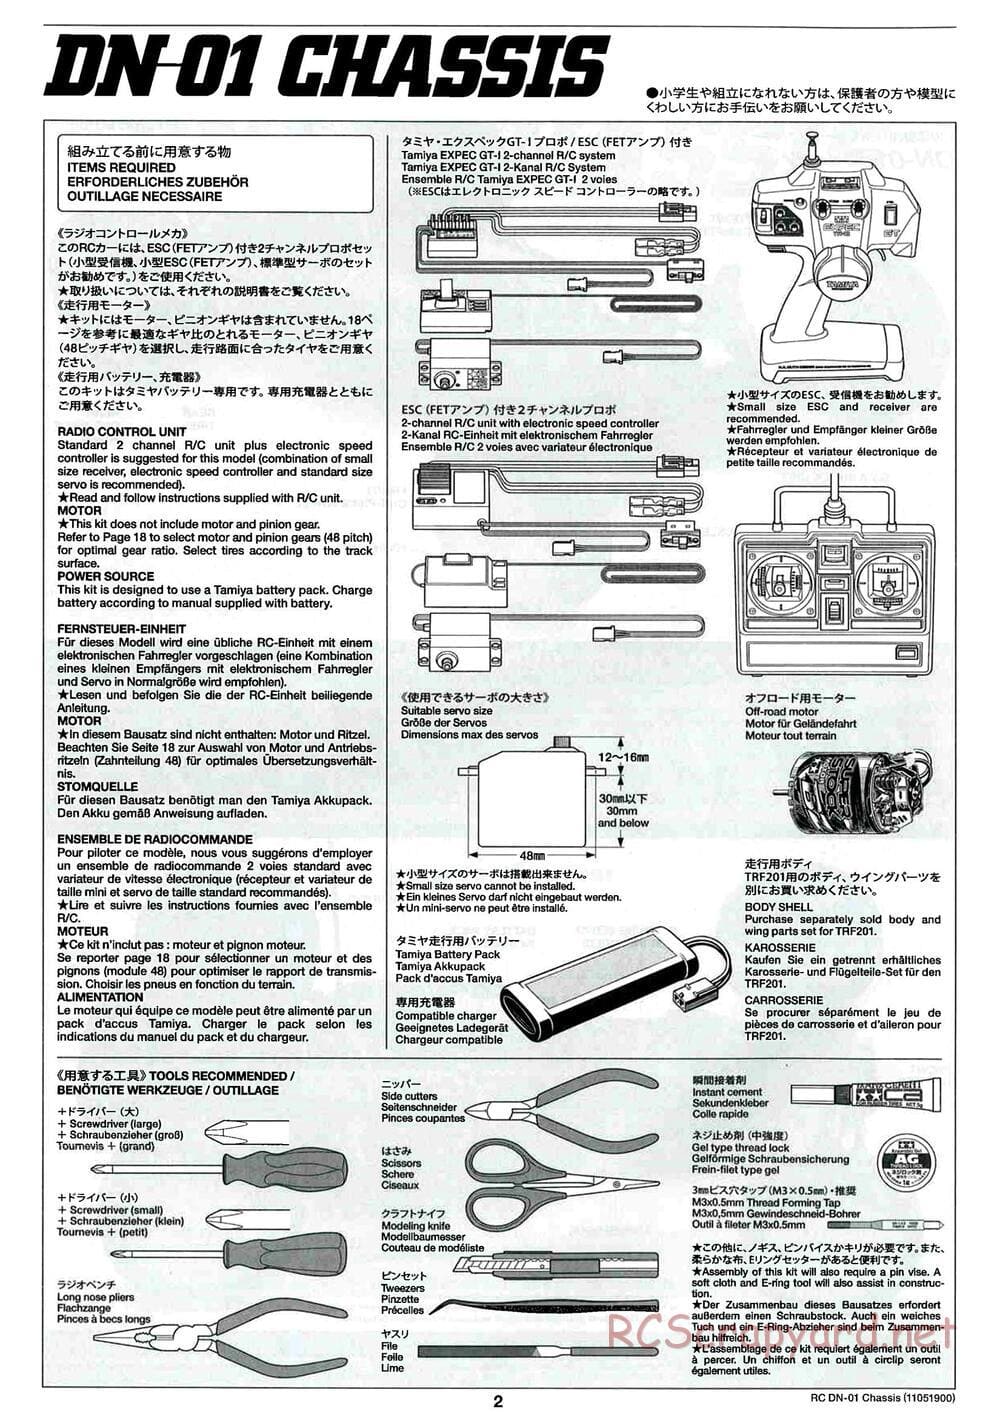 Tamiya - DN-01 Chassis - Manual - Page 2